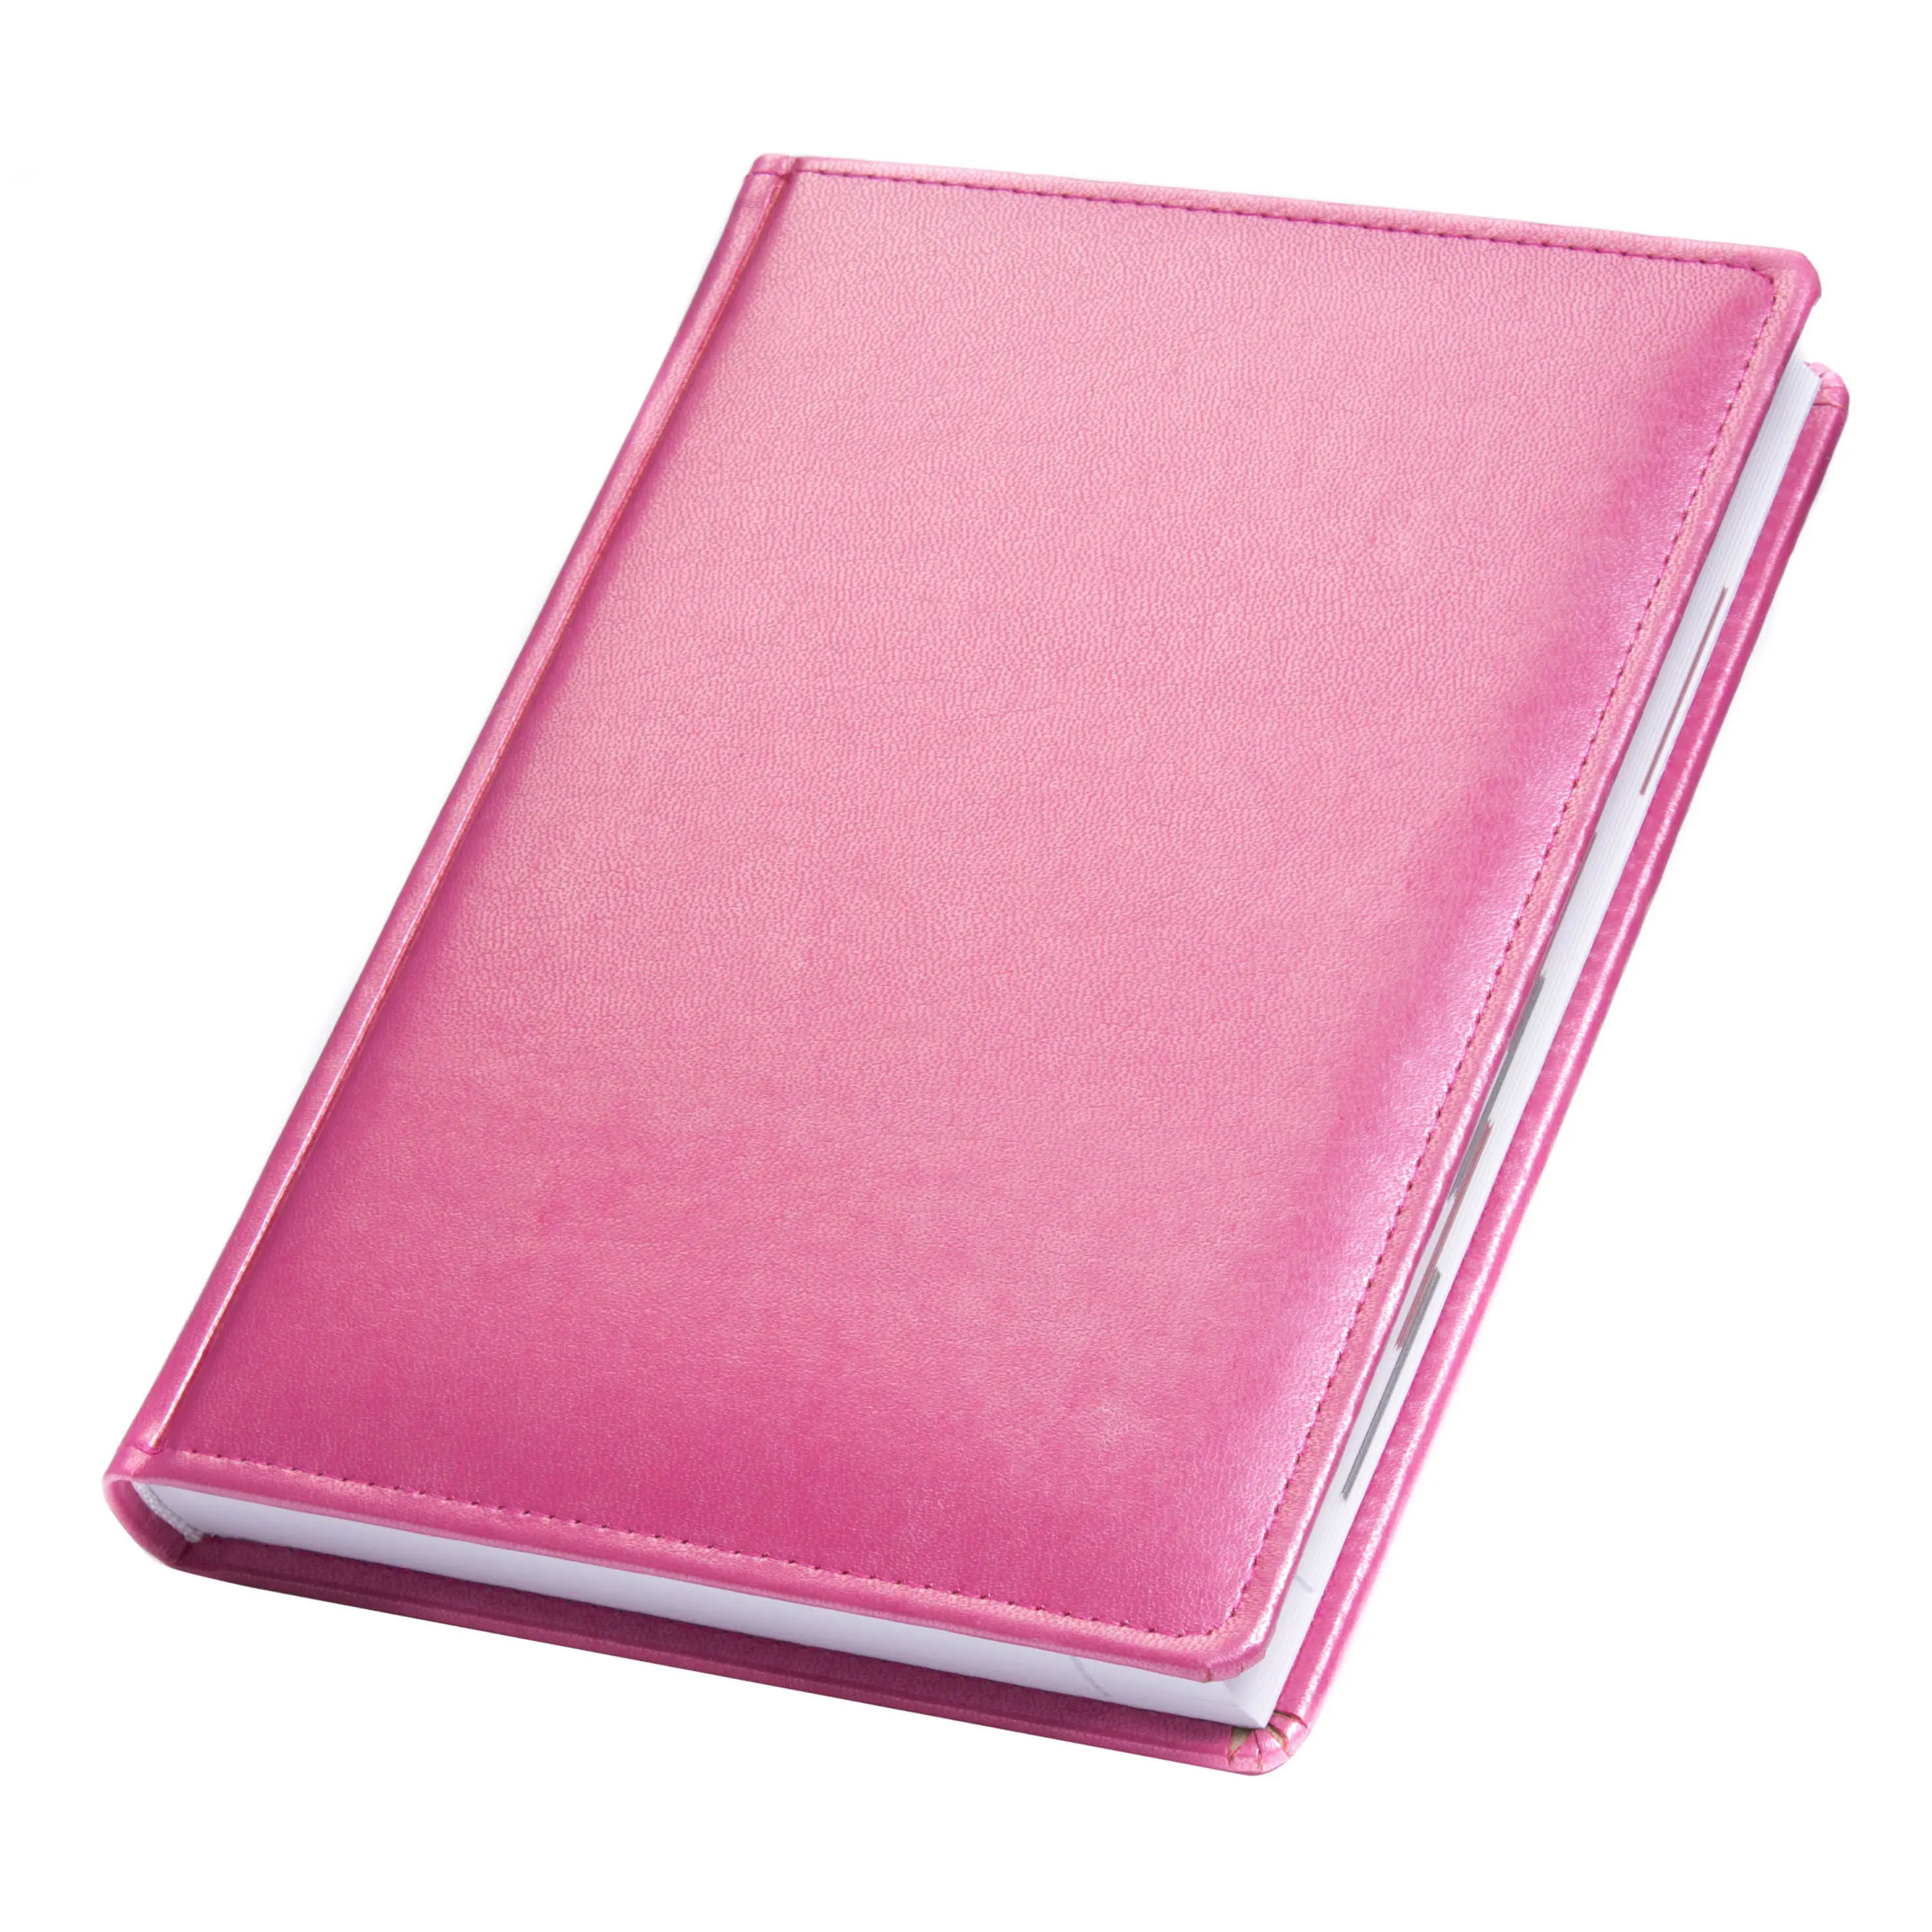 Ежедневник A5 'Brisk' датированный ЗВ-55 'CAPRICE' розовый Розовый 5920-05